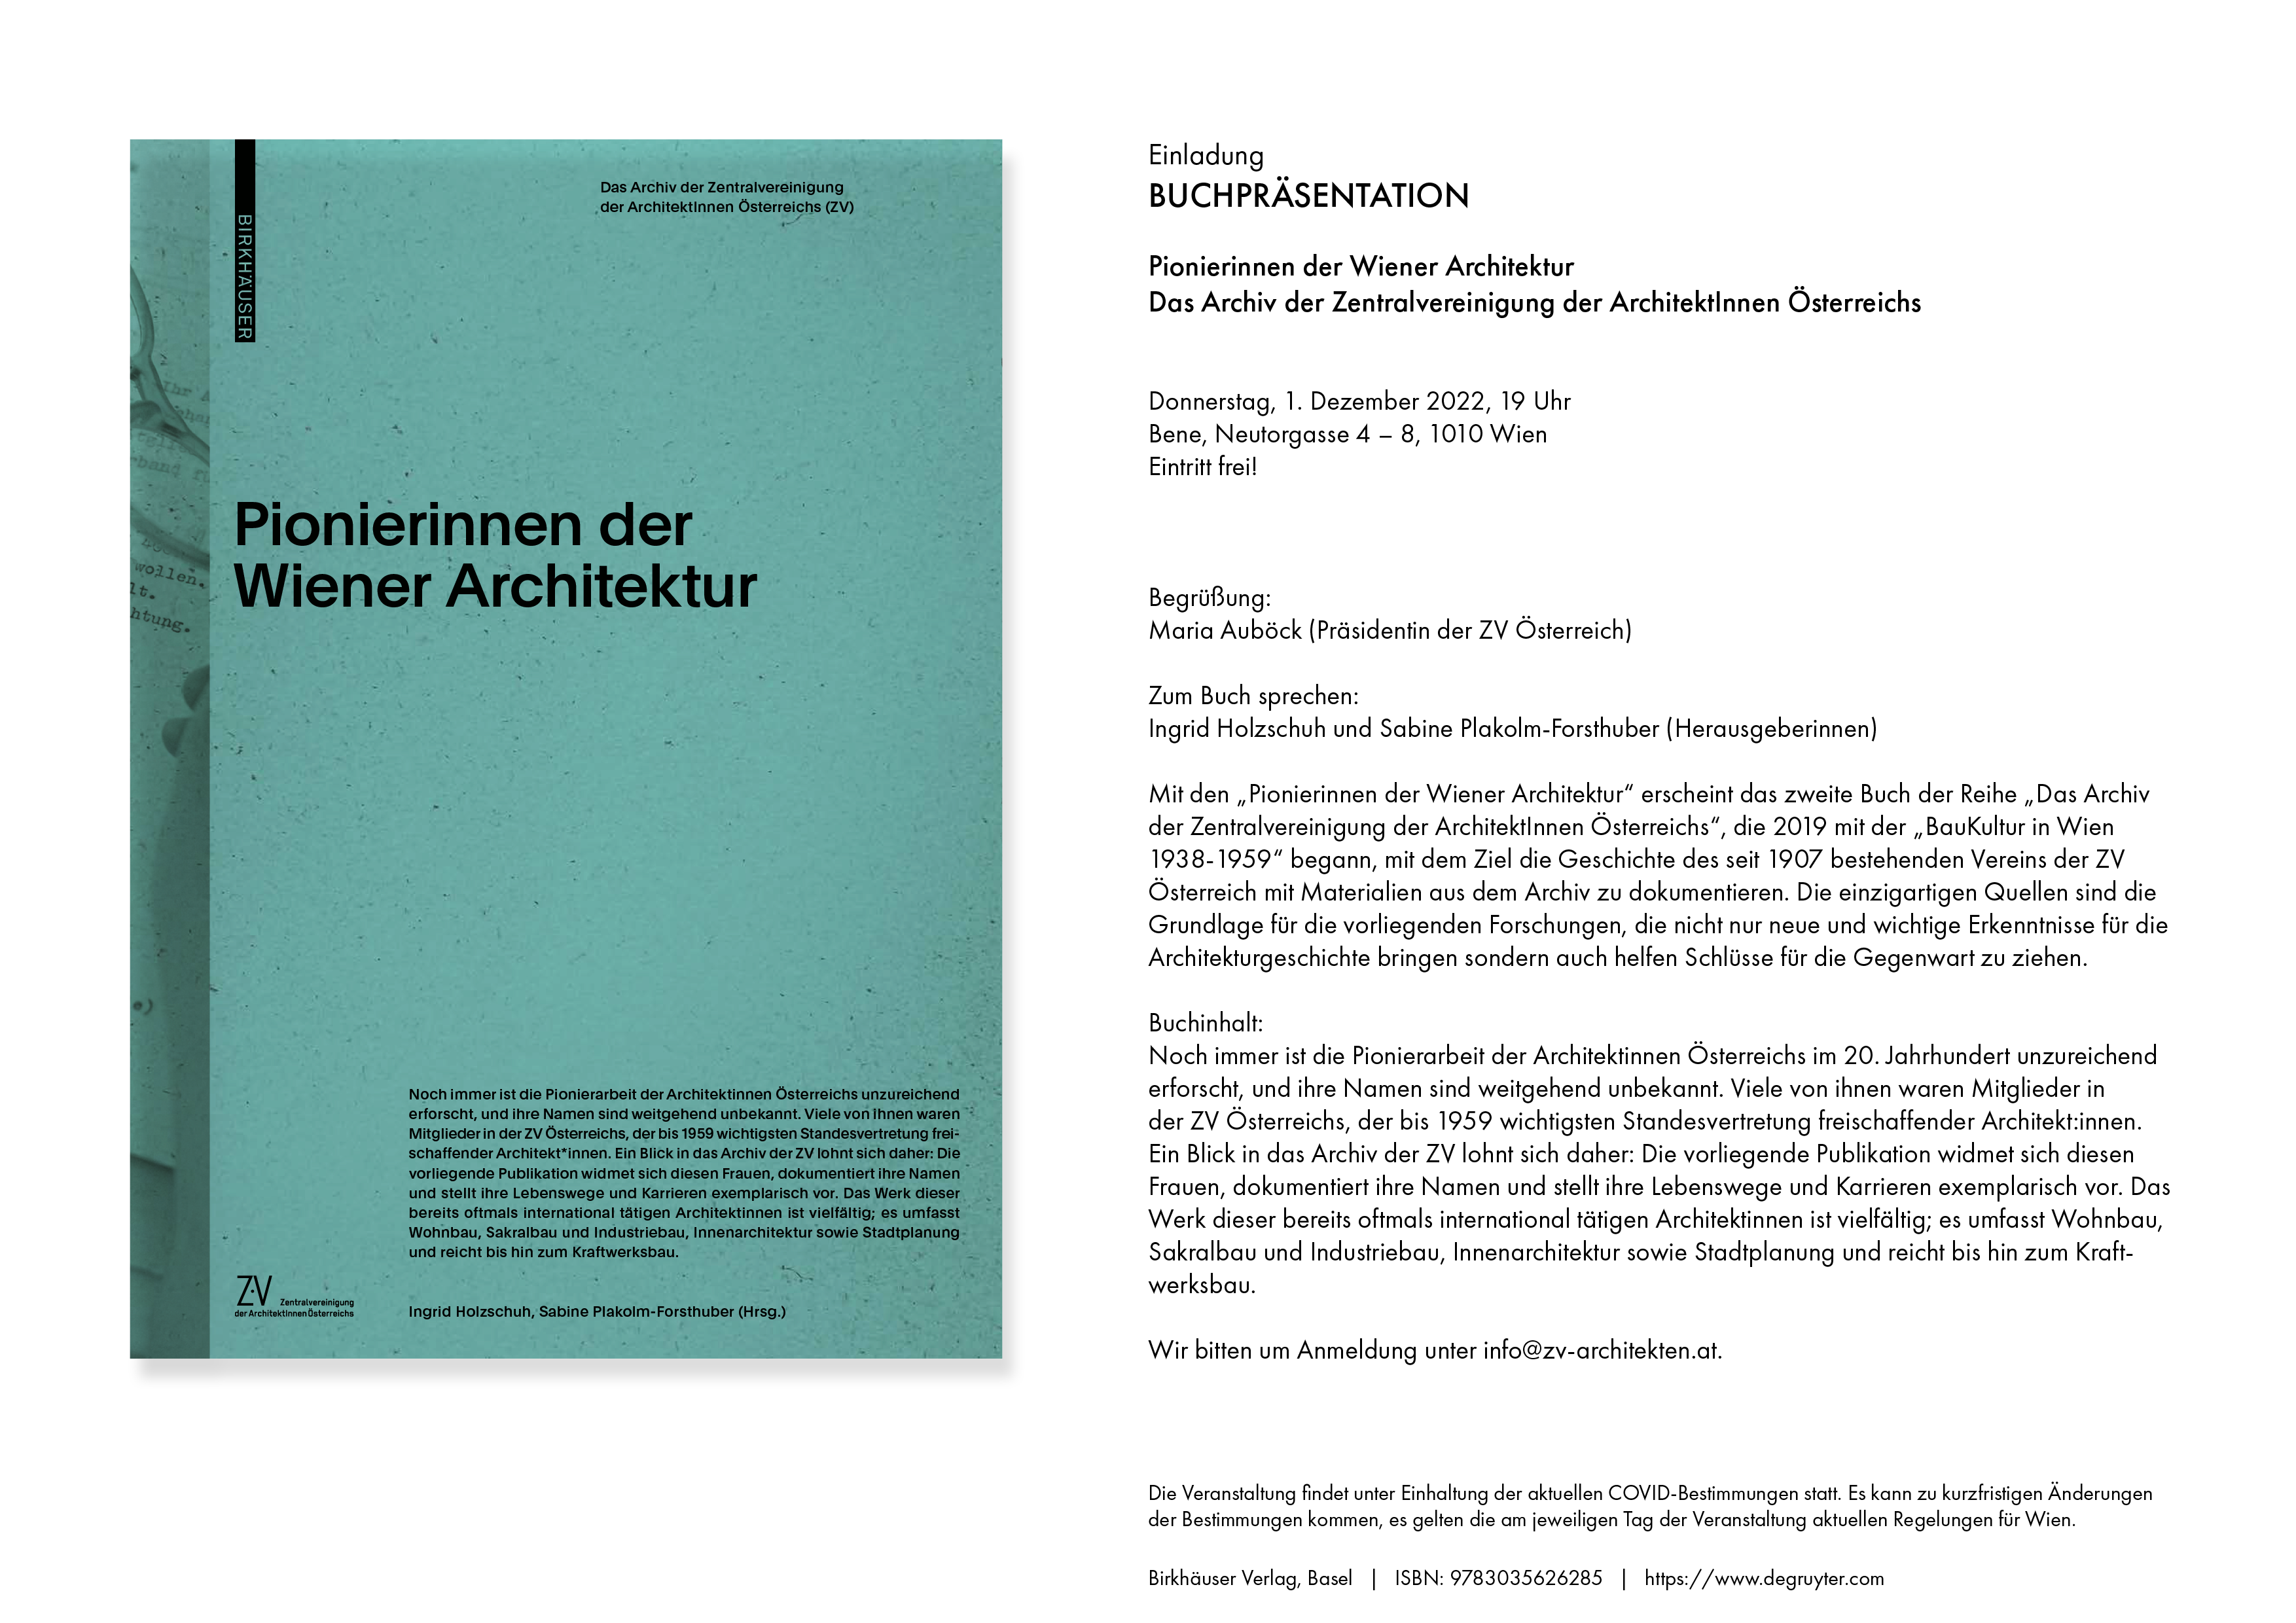 Pionierinnen der Wiener Architektur – Buchpräsentation am 01.12.2022